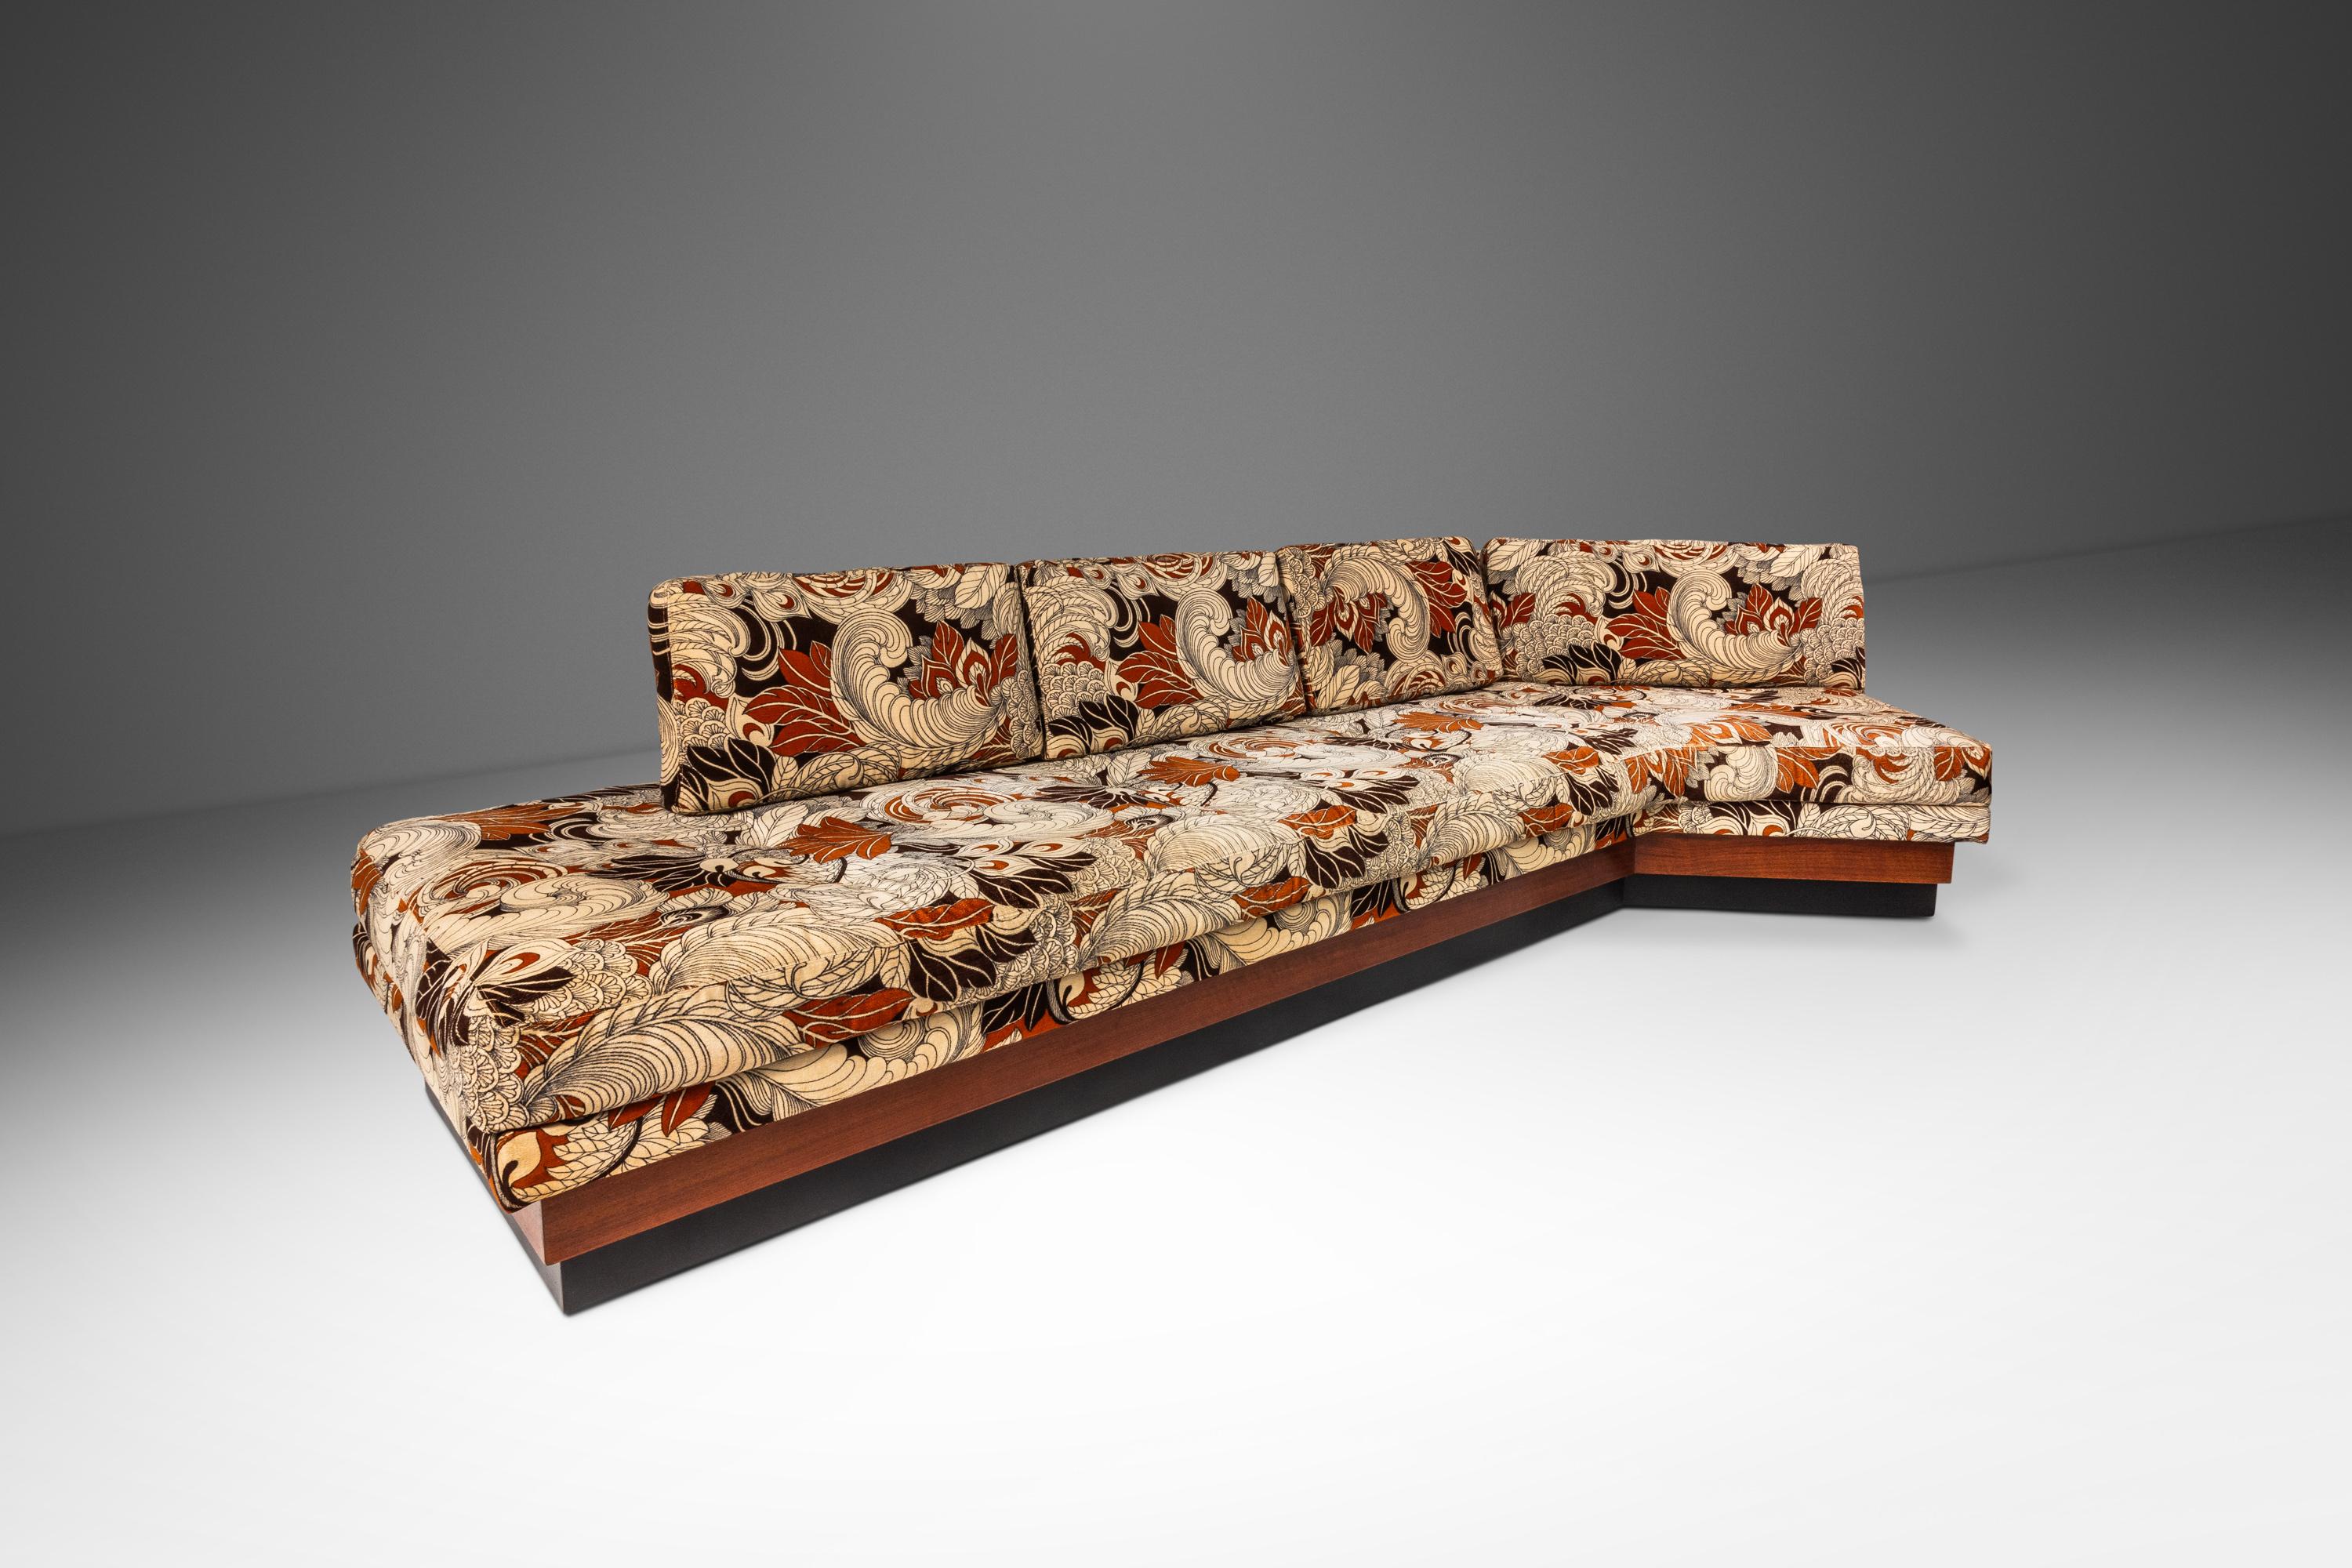 Das von dem unvergleichlichen Adrian Pearsall entworfene ikonische Sofa Platform 